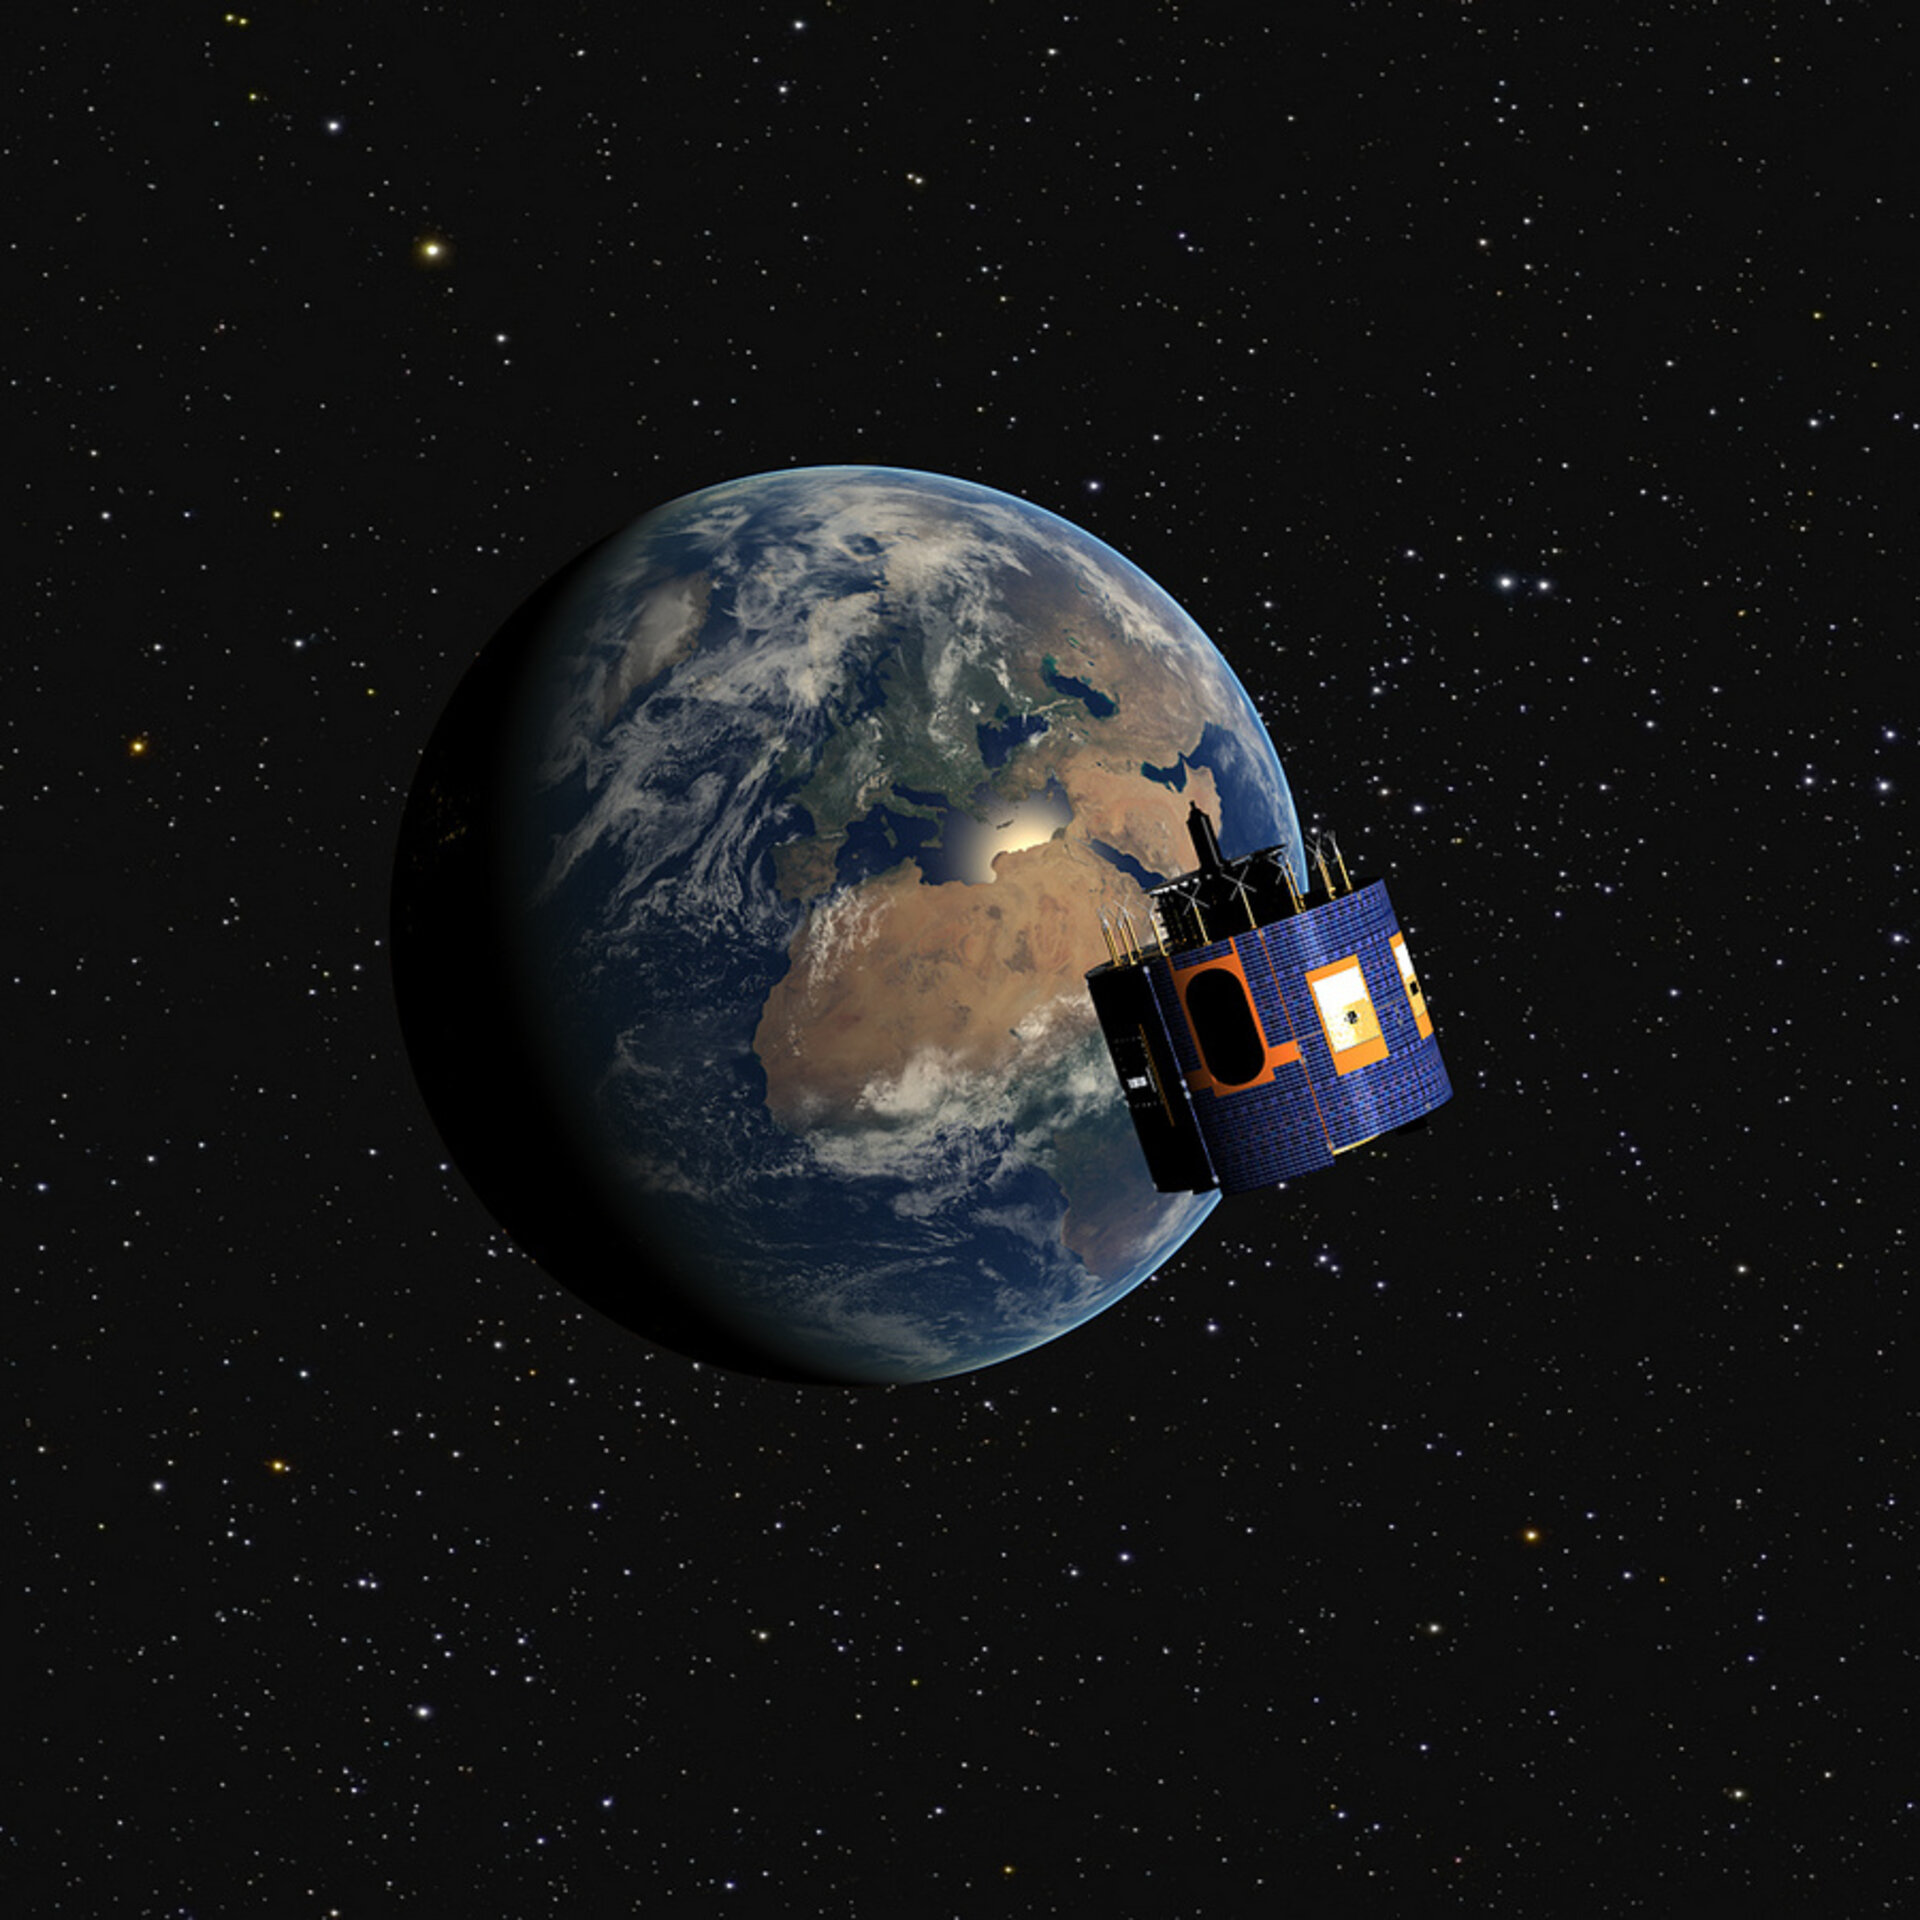 MSG-4 in orbit